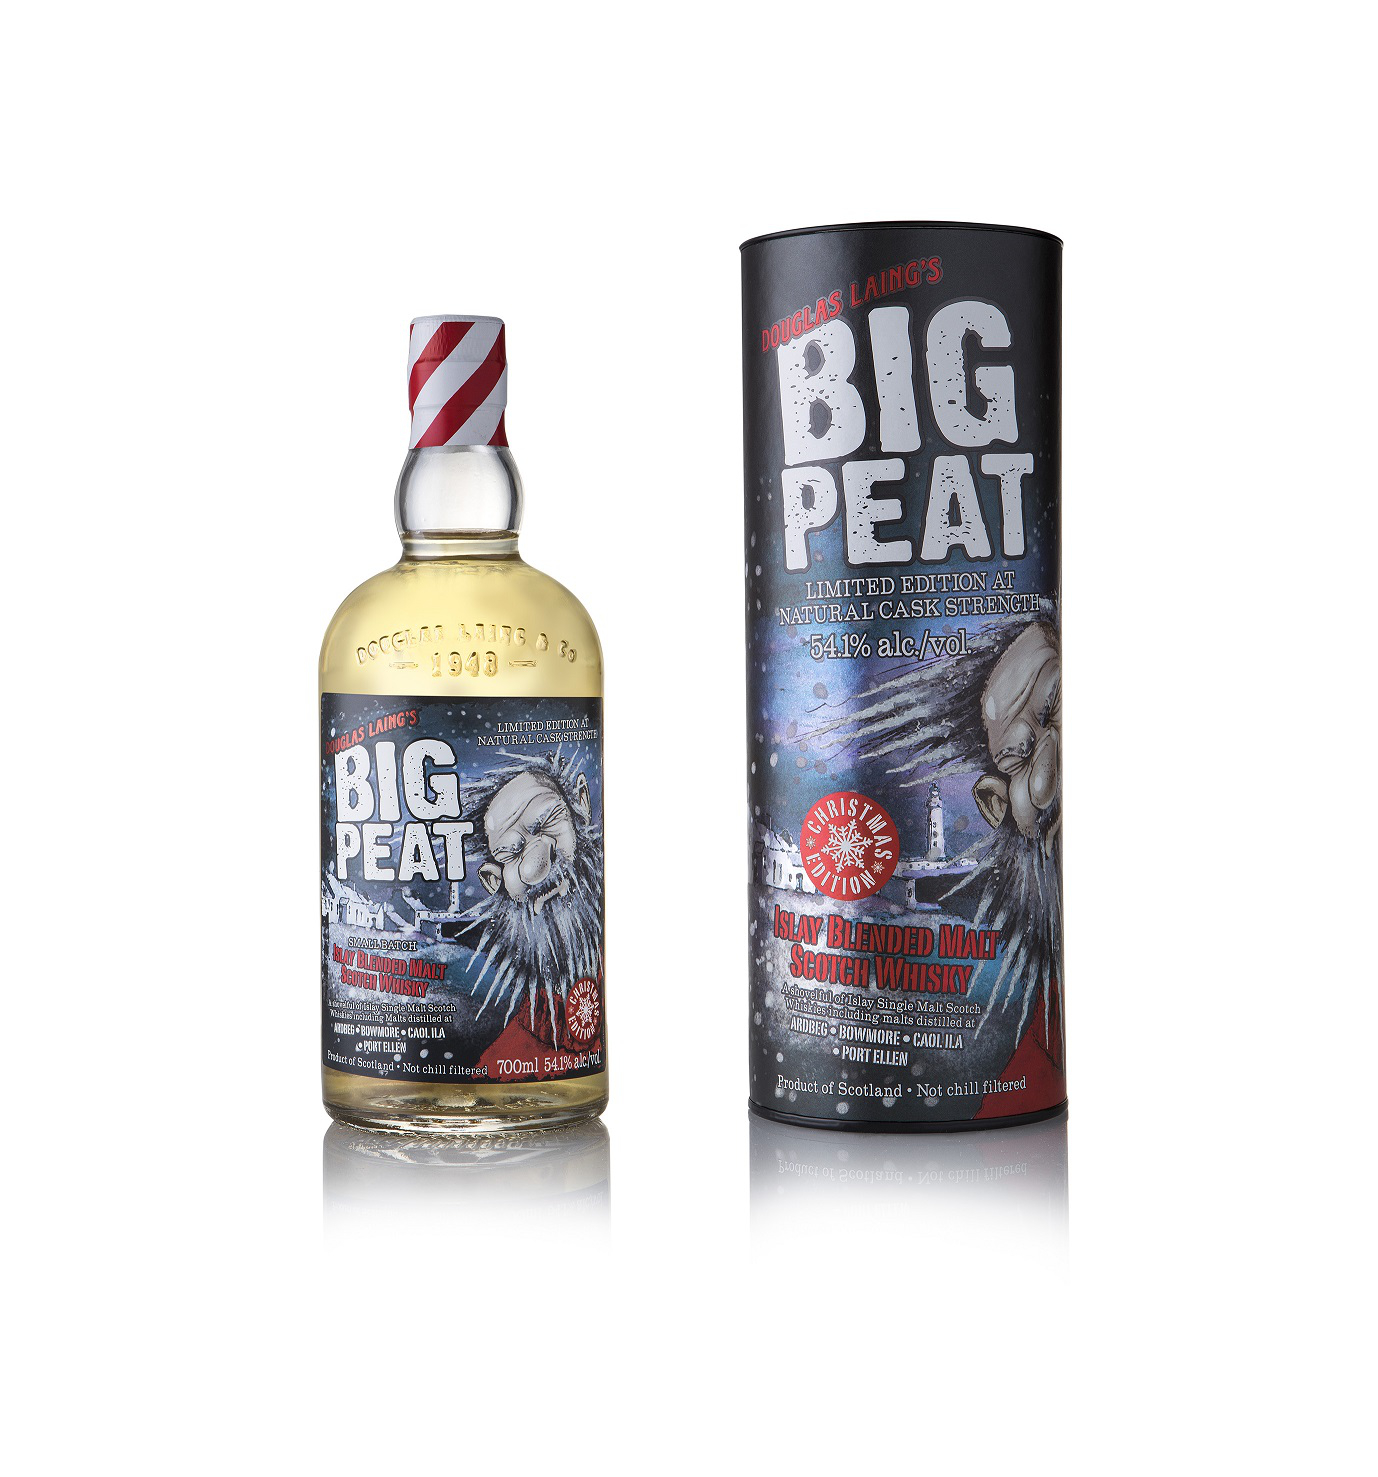 Big Peat Whisky Christmas Edition 2017